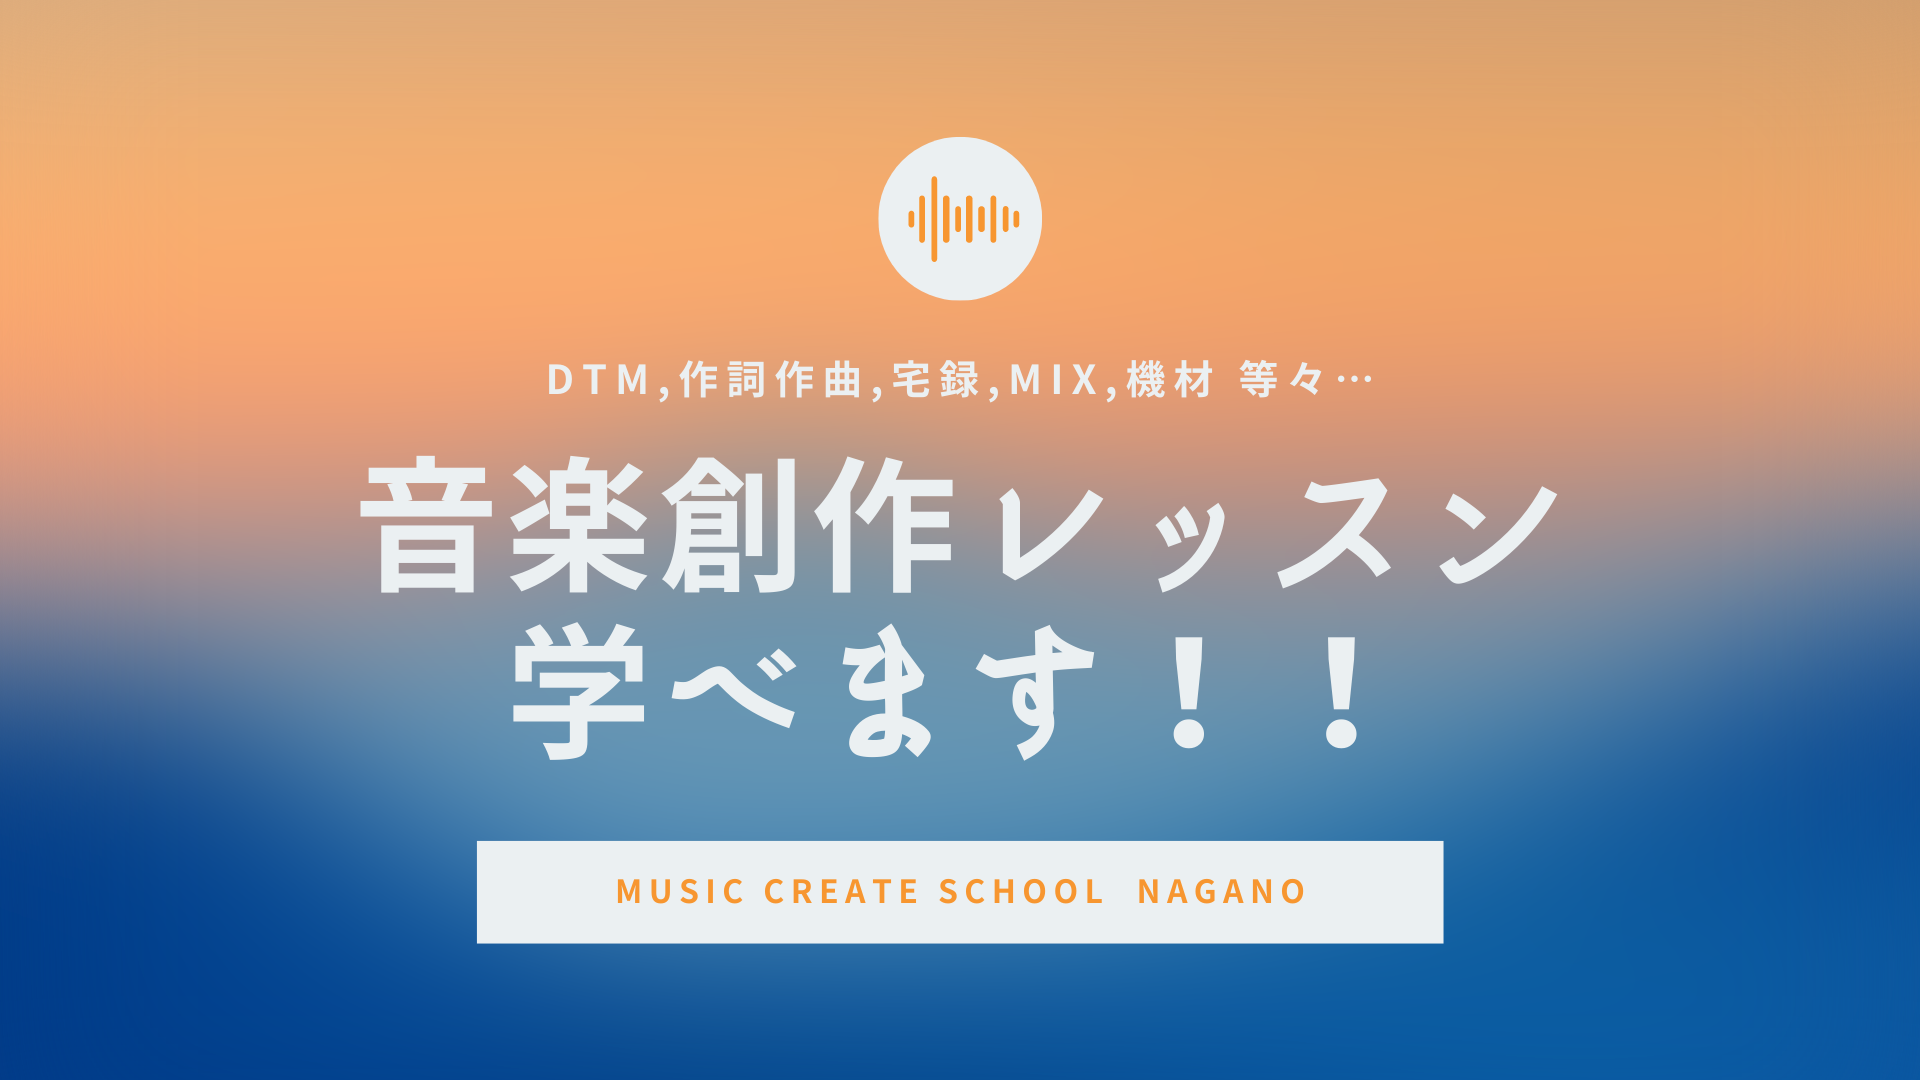 MUSIC CREATE SCHOOL NAGANO -heTor-